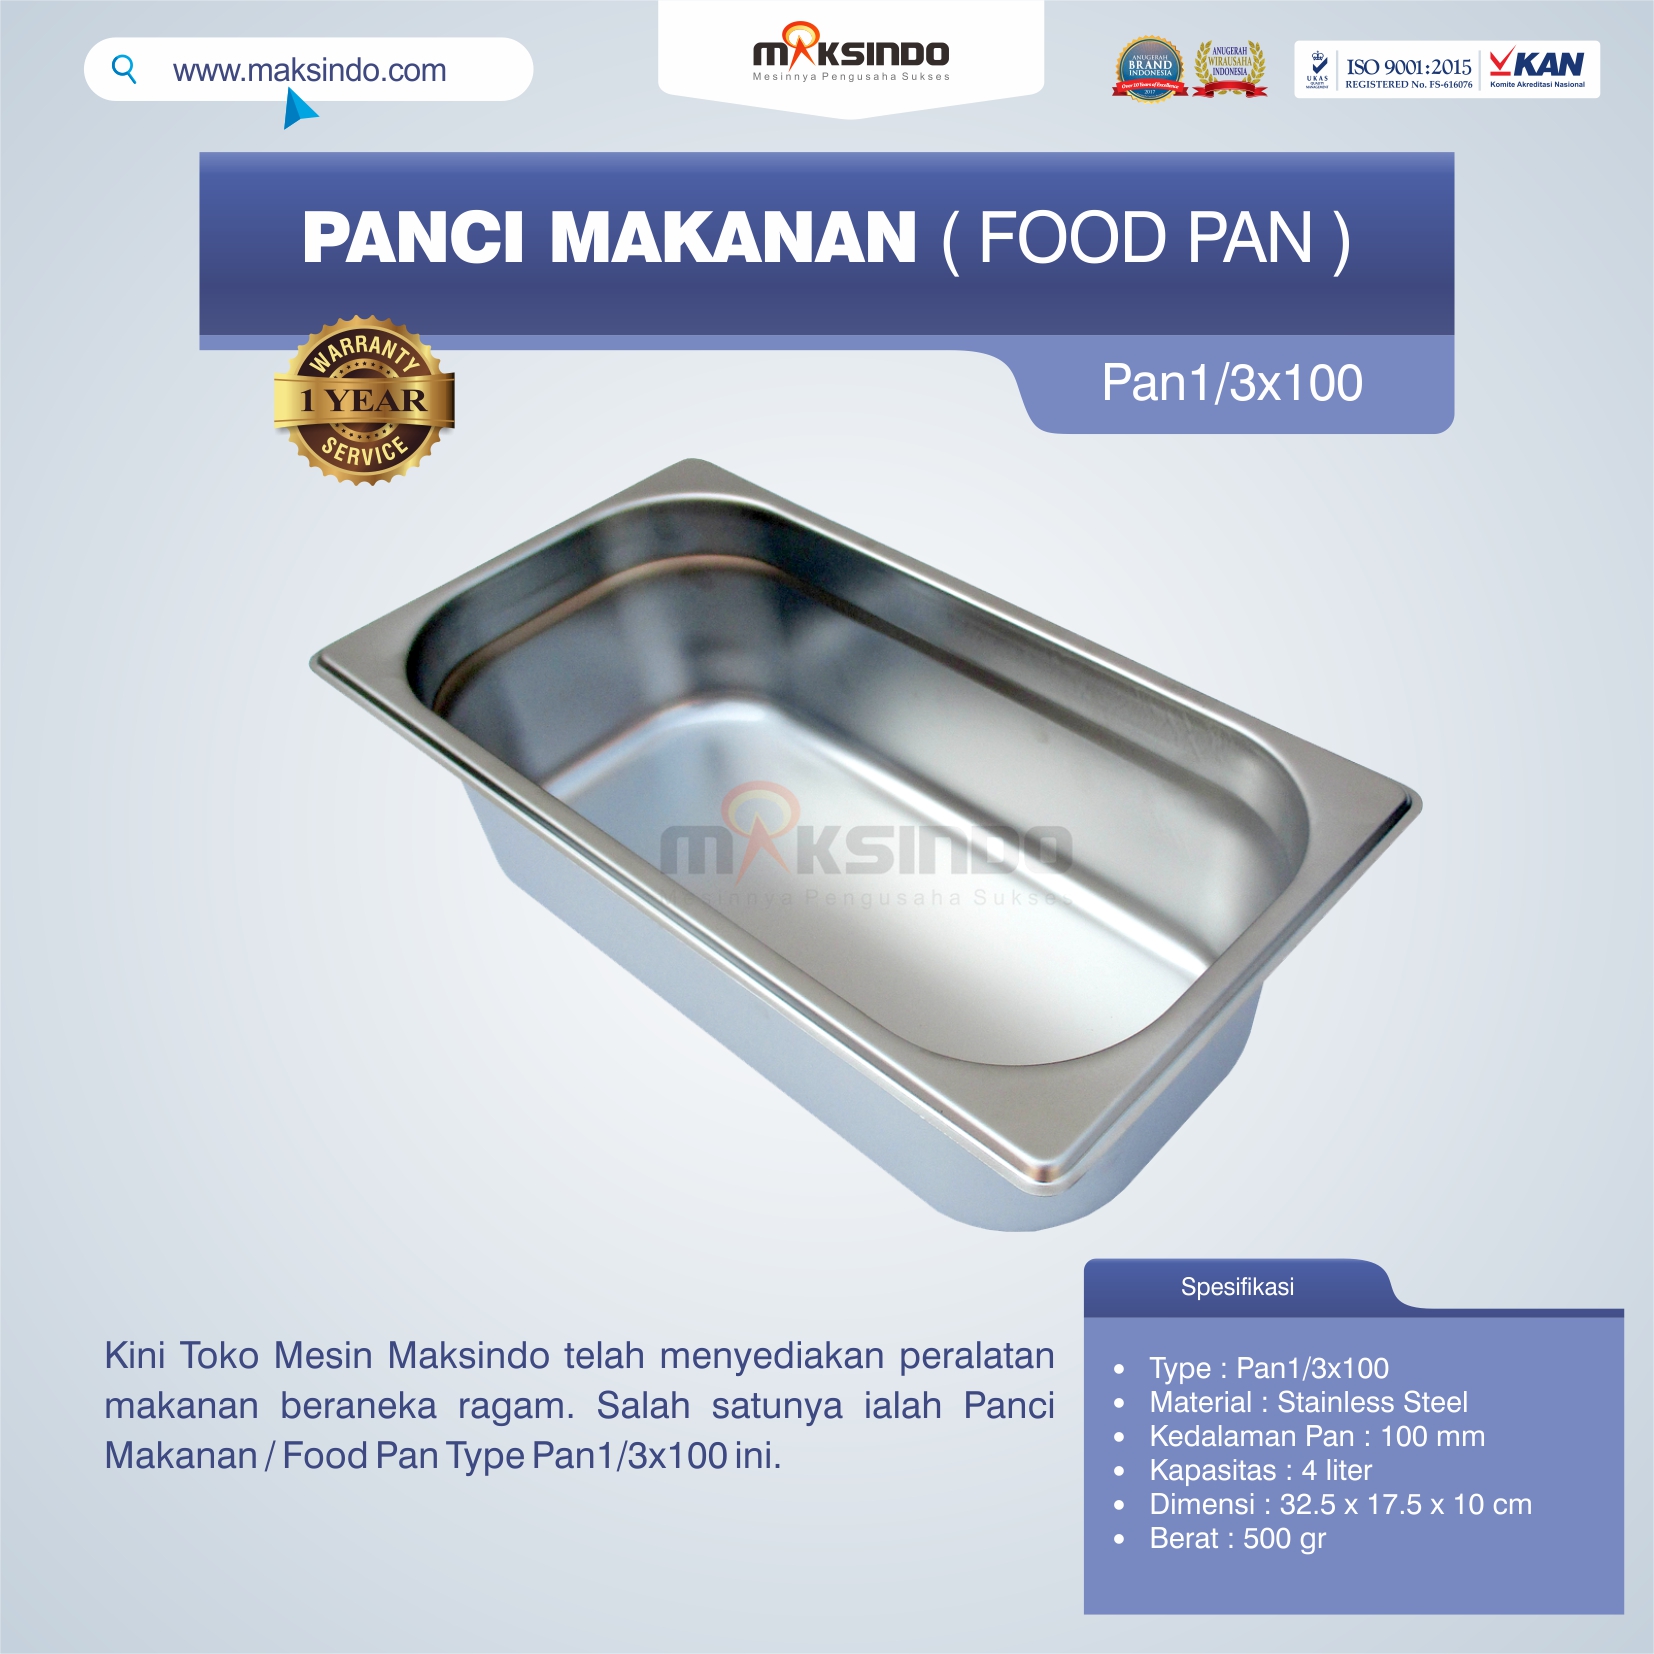 Jual Panci Makanan / Food Pan Type Pan1/3×100 di Banjarmasin